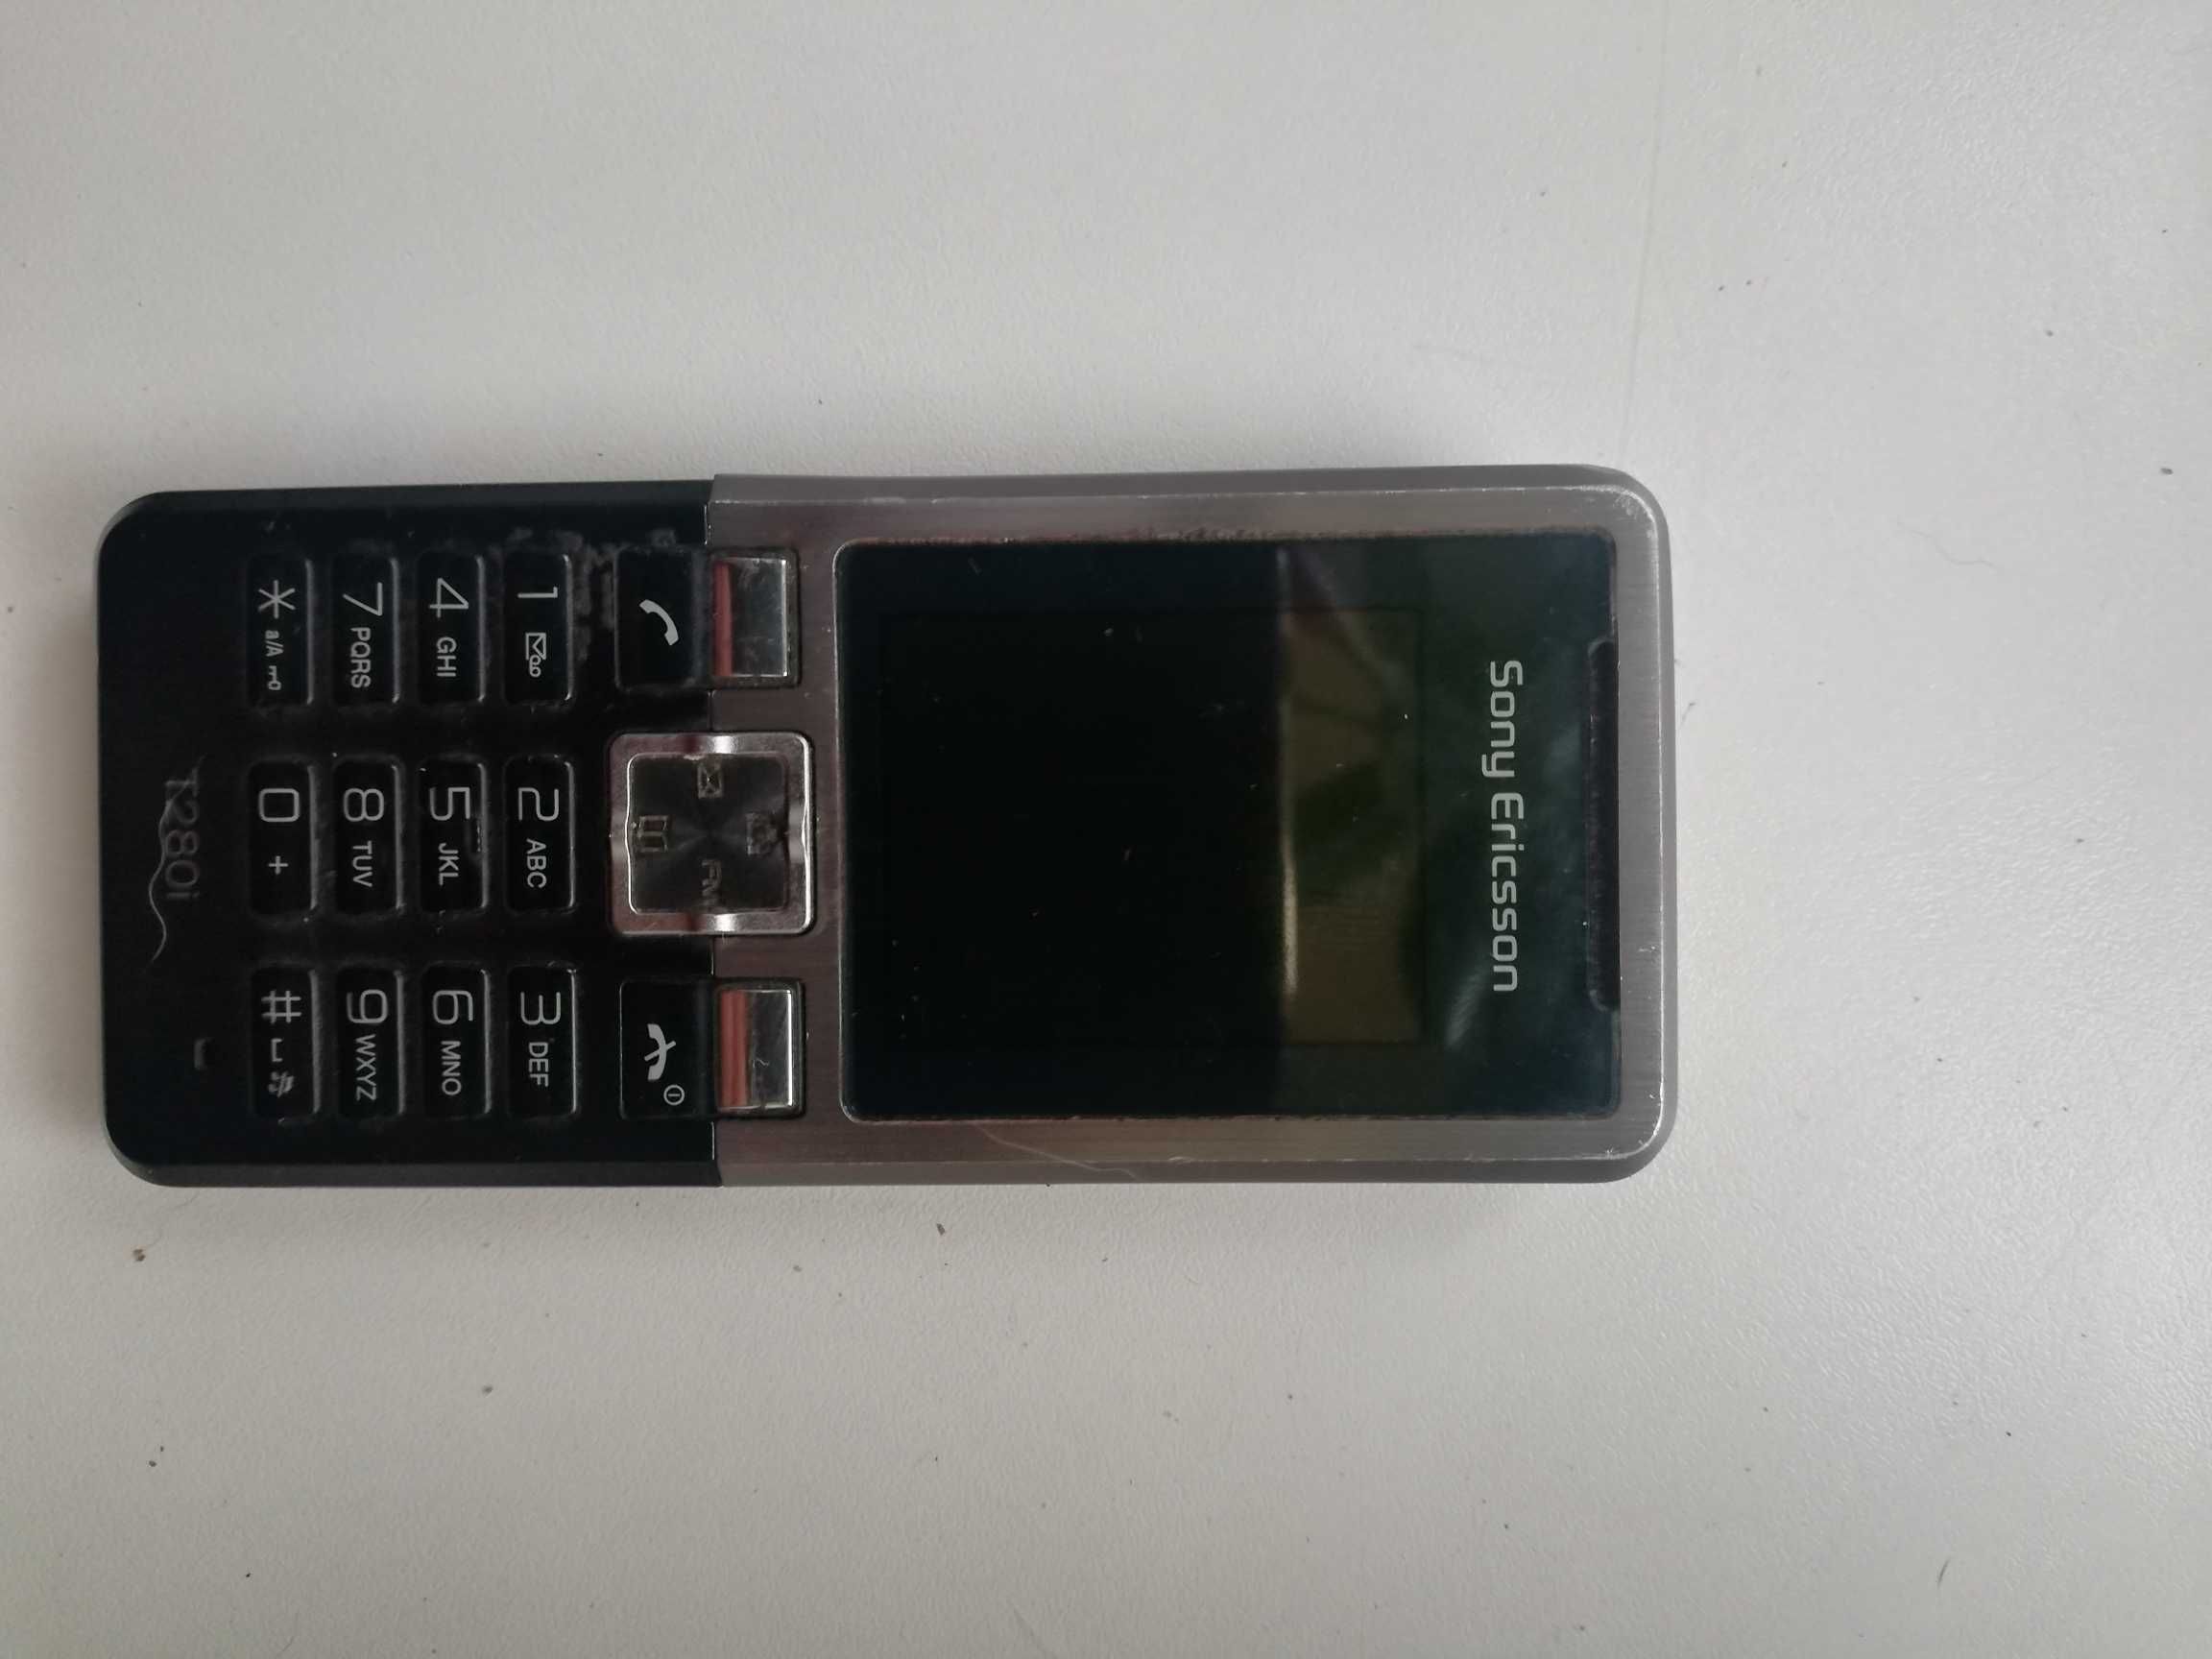 Sprzedam telefon komórkowy Sony Ericsson T-280 i ,retro